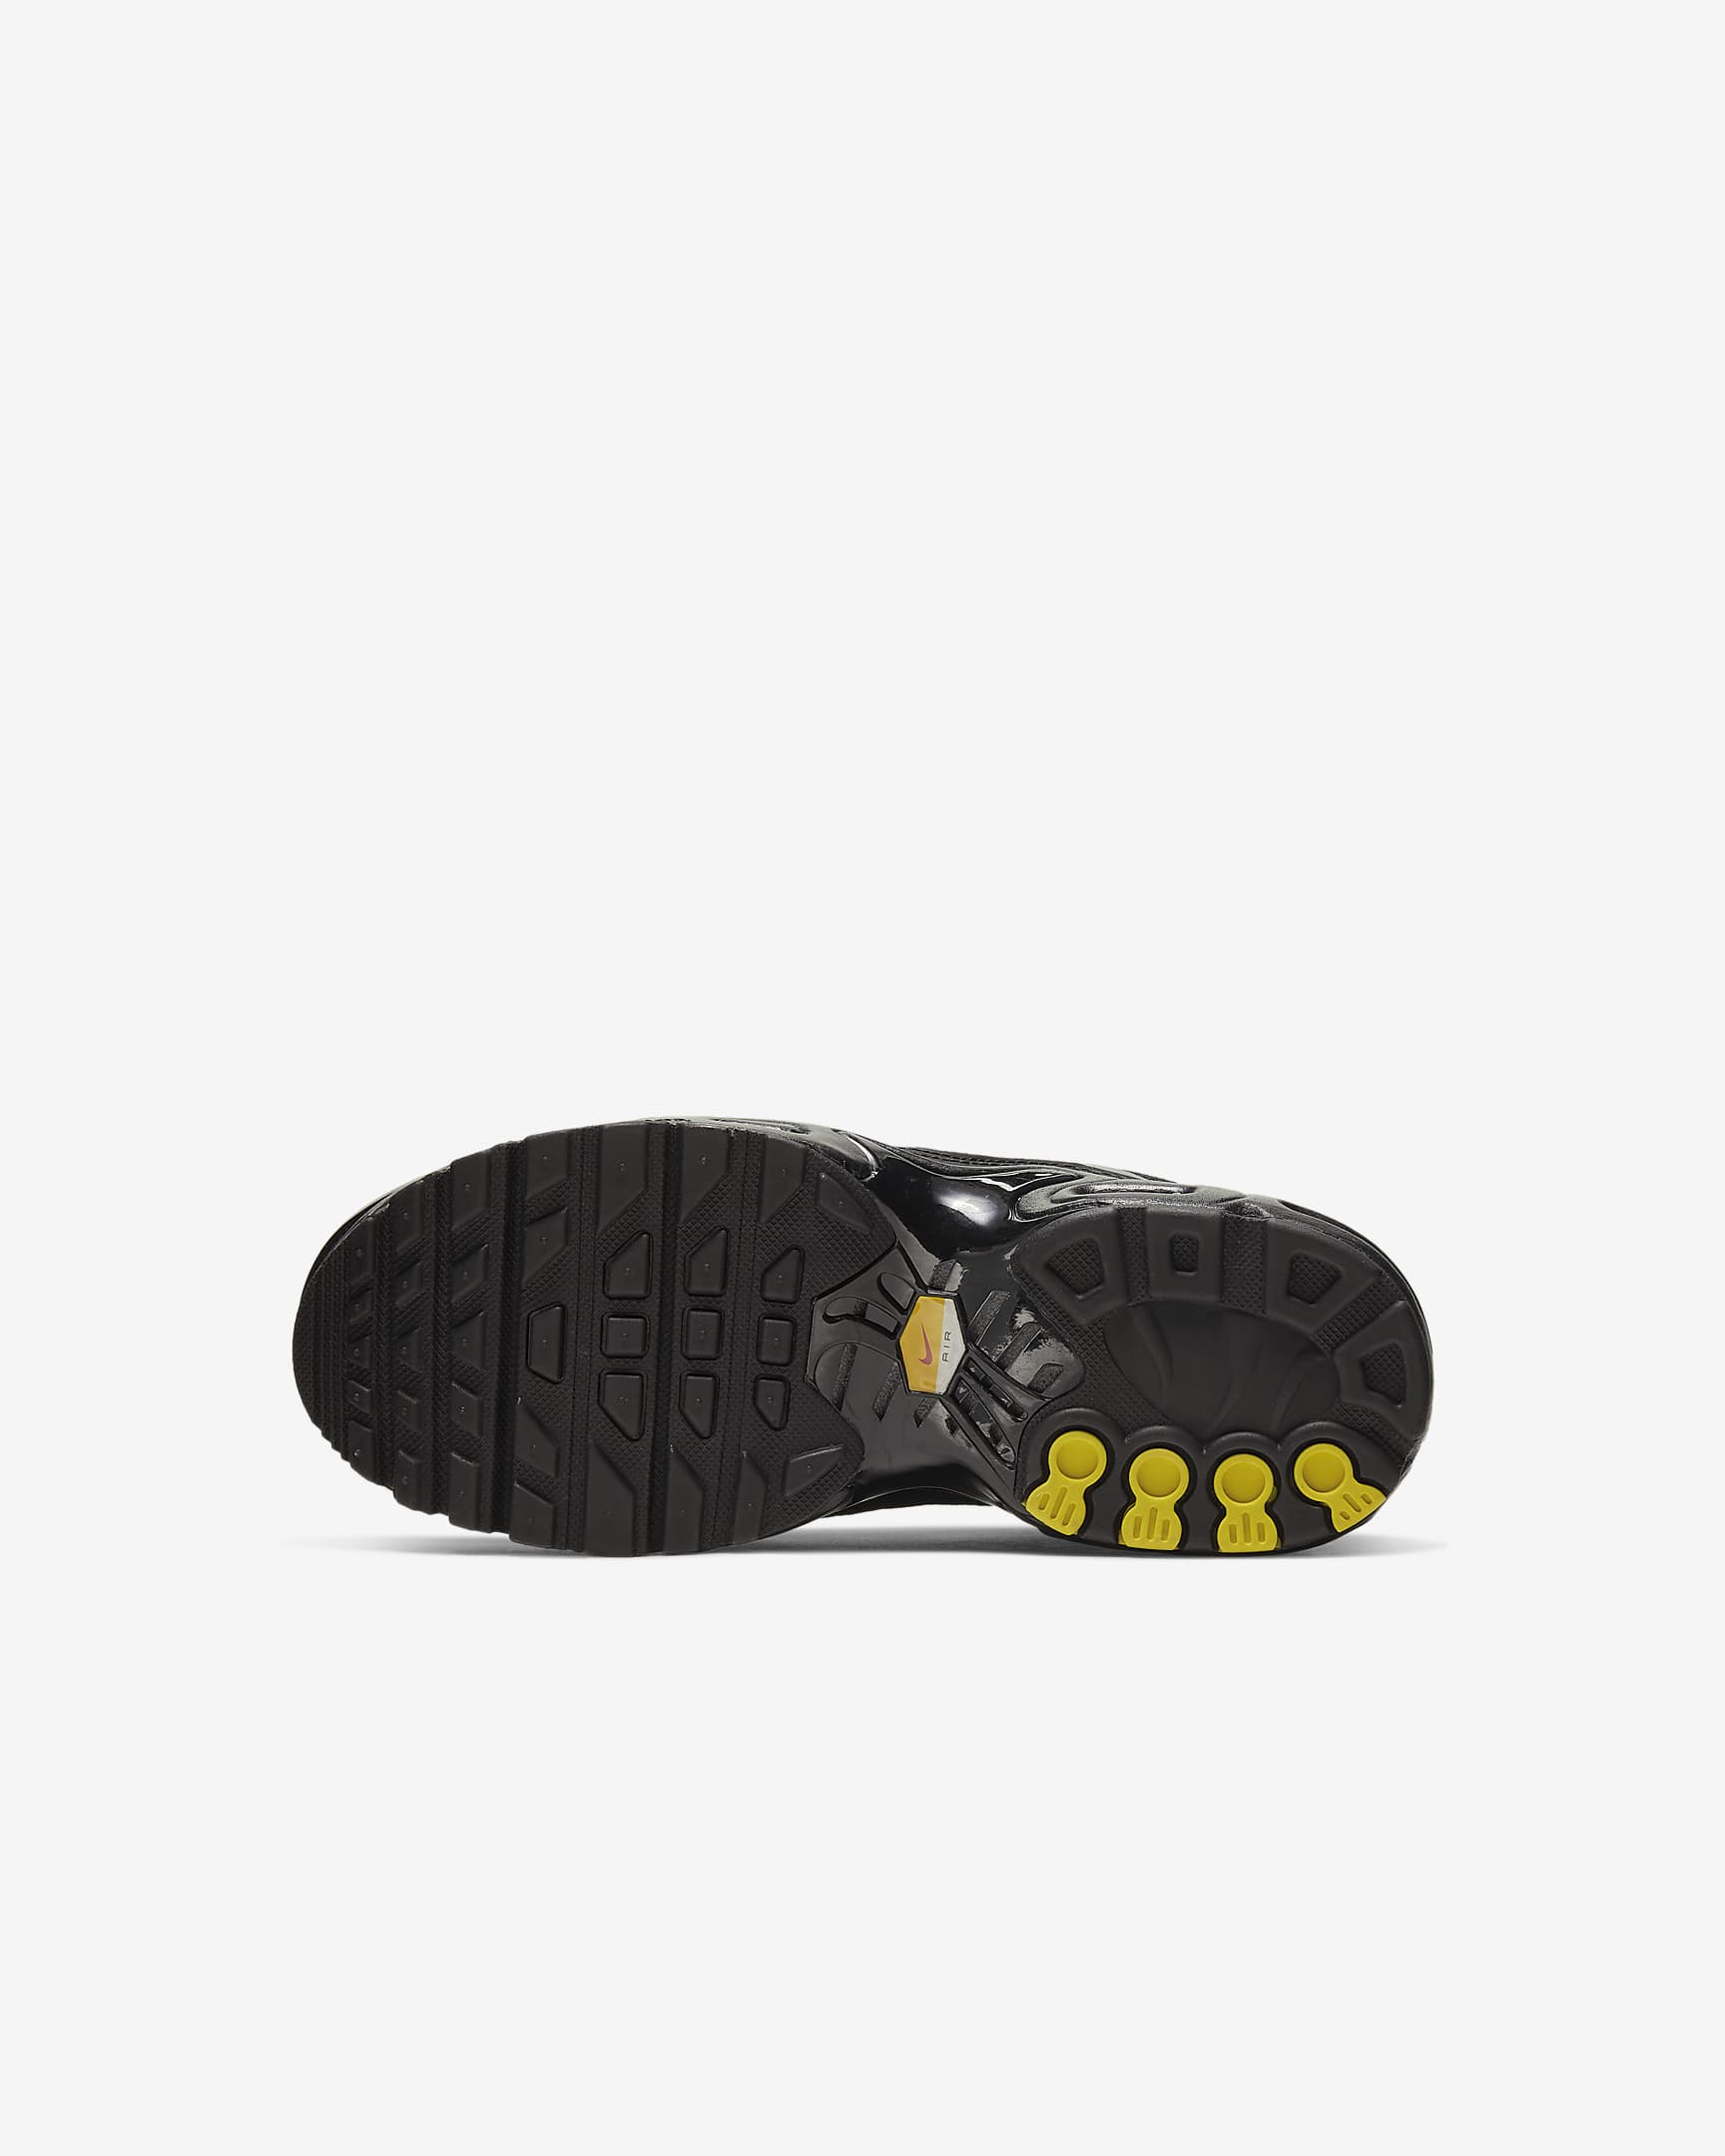 Nike Air Max Plus-sko til mindre børn - sort/sort/sort